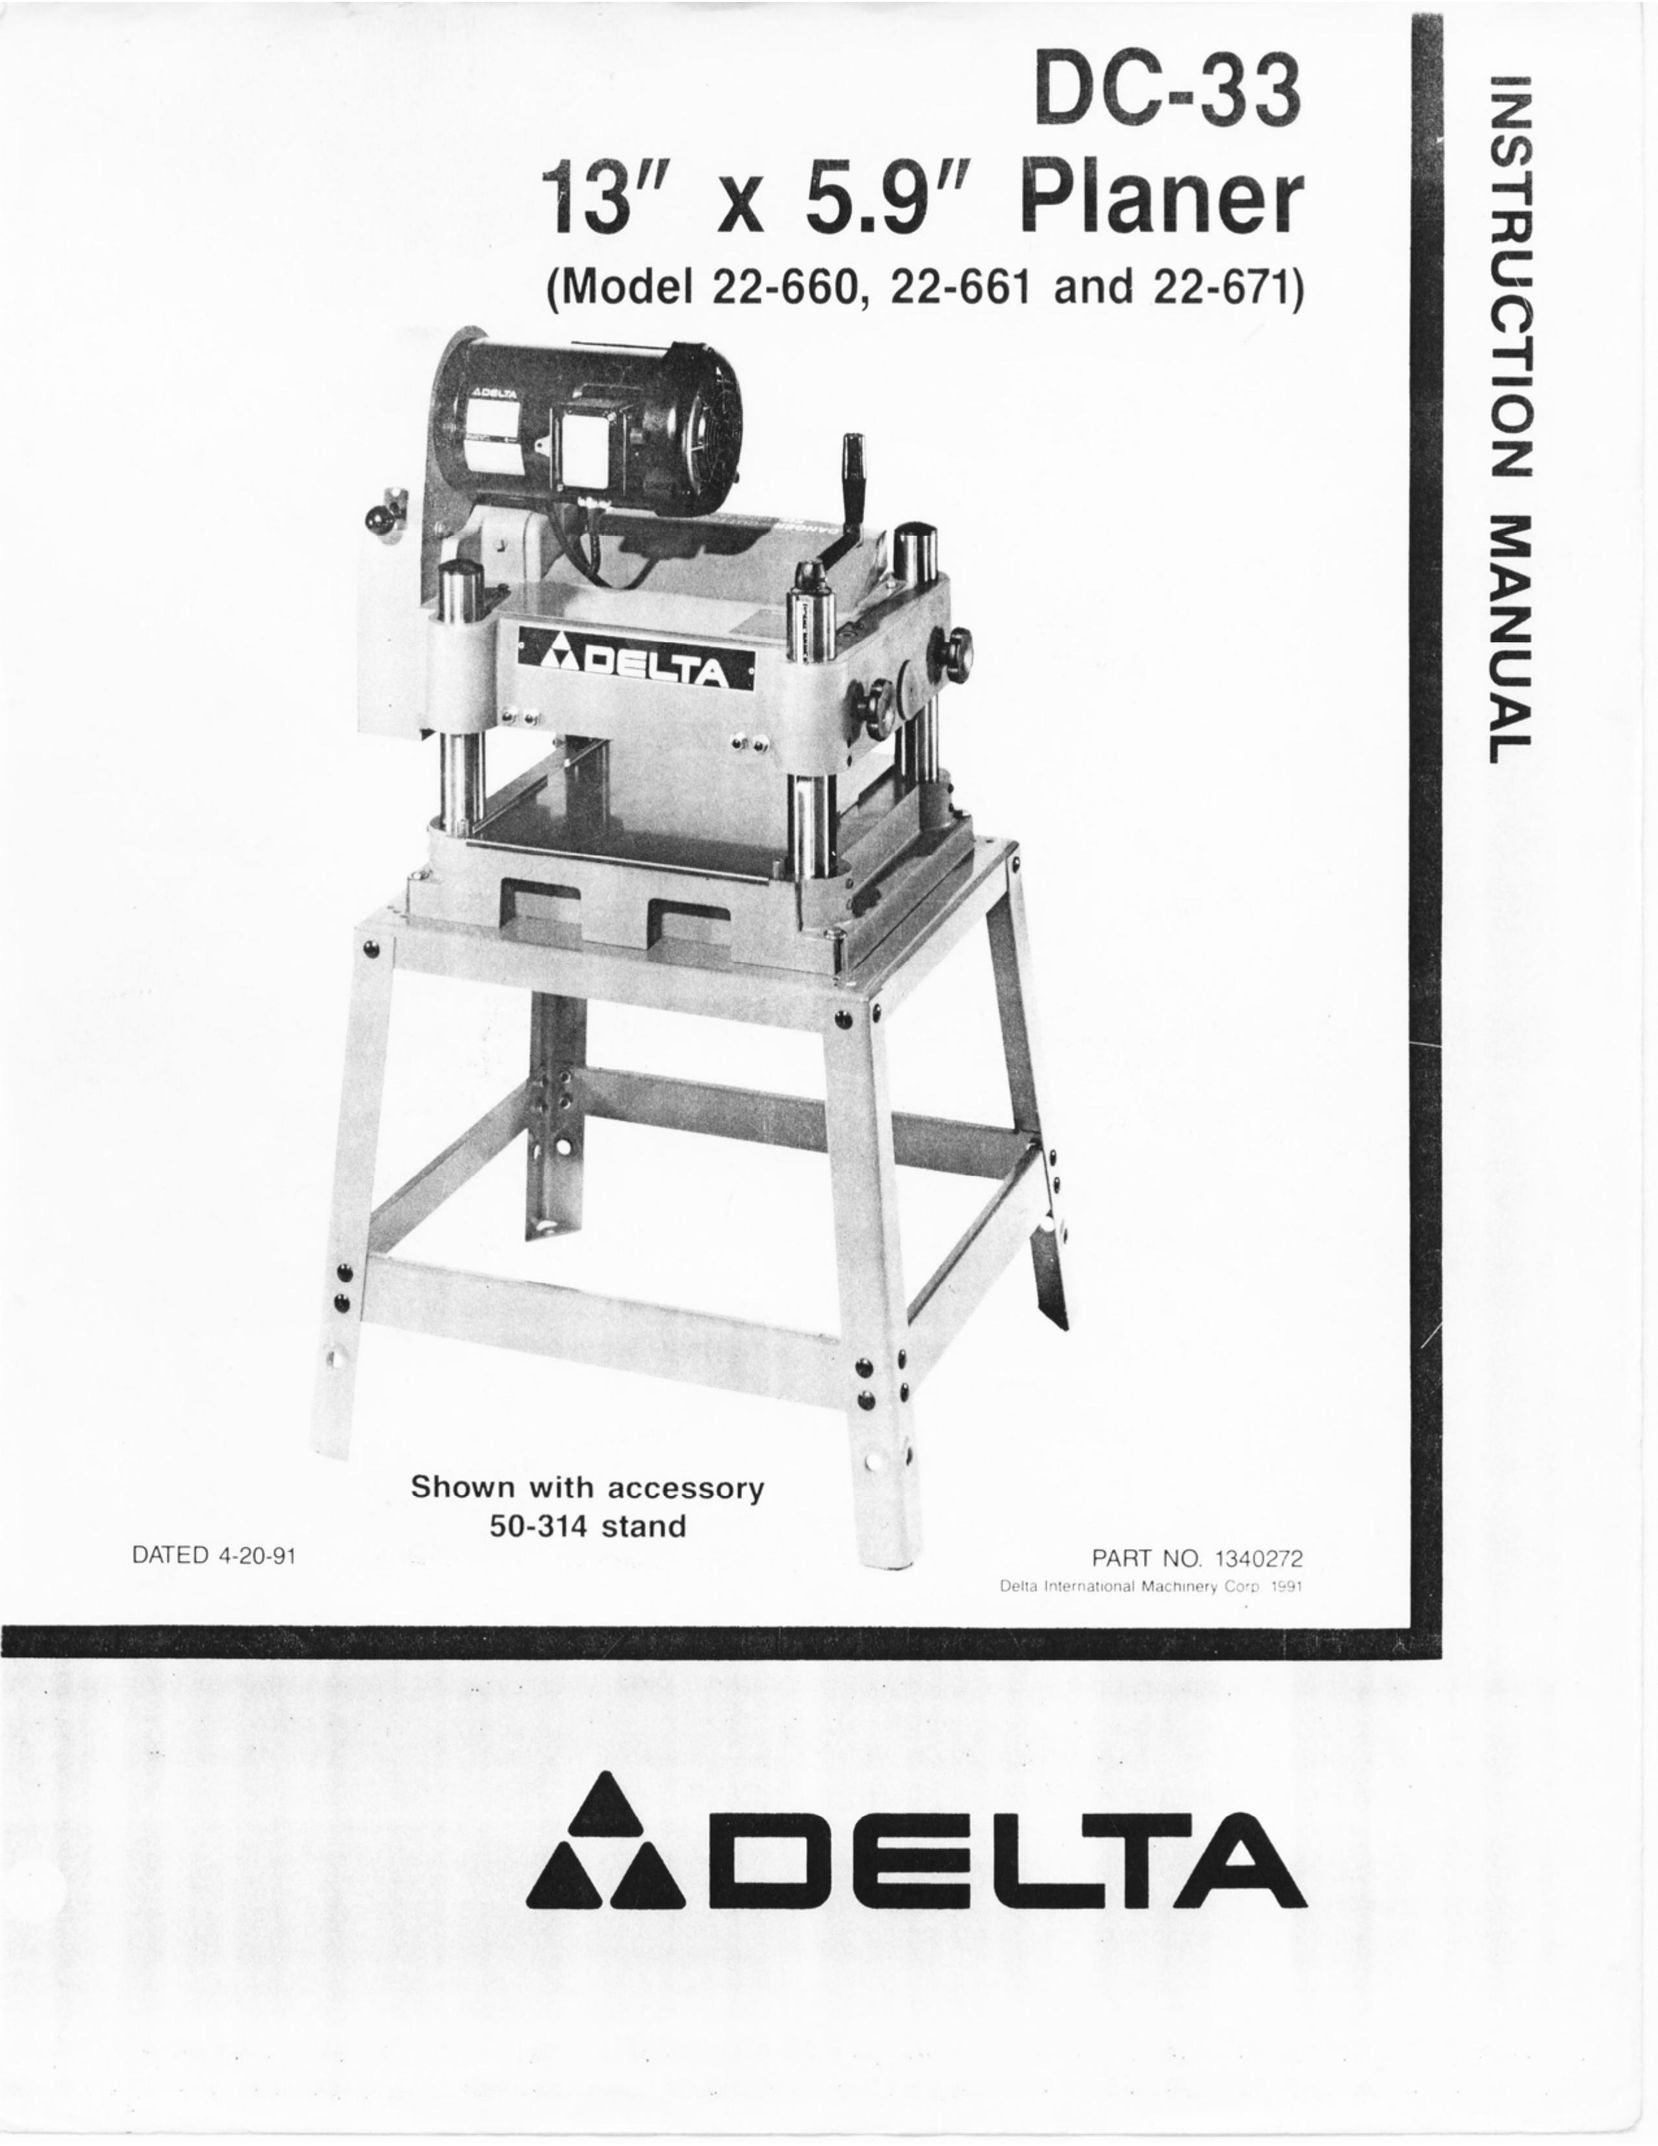 Delta 22-671 Planer User Manual